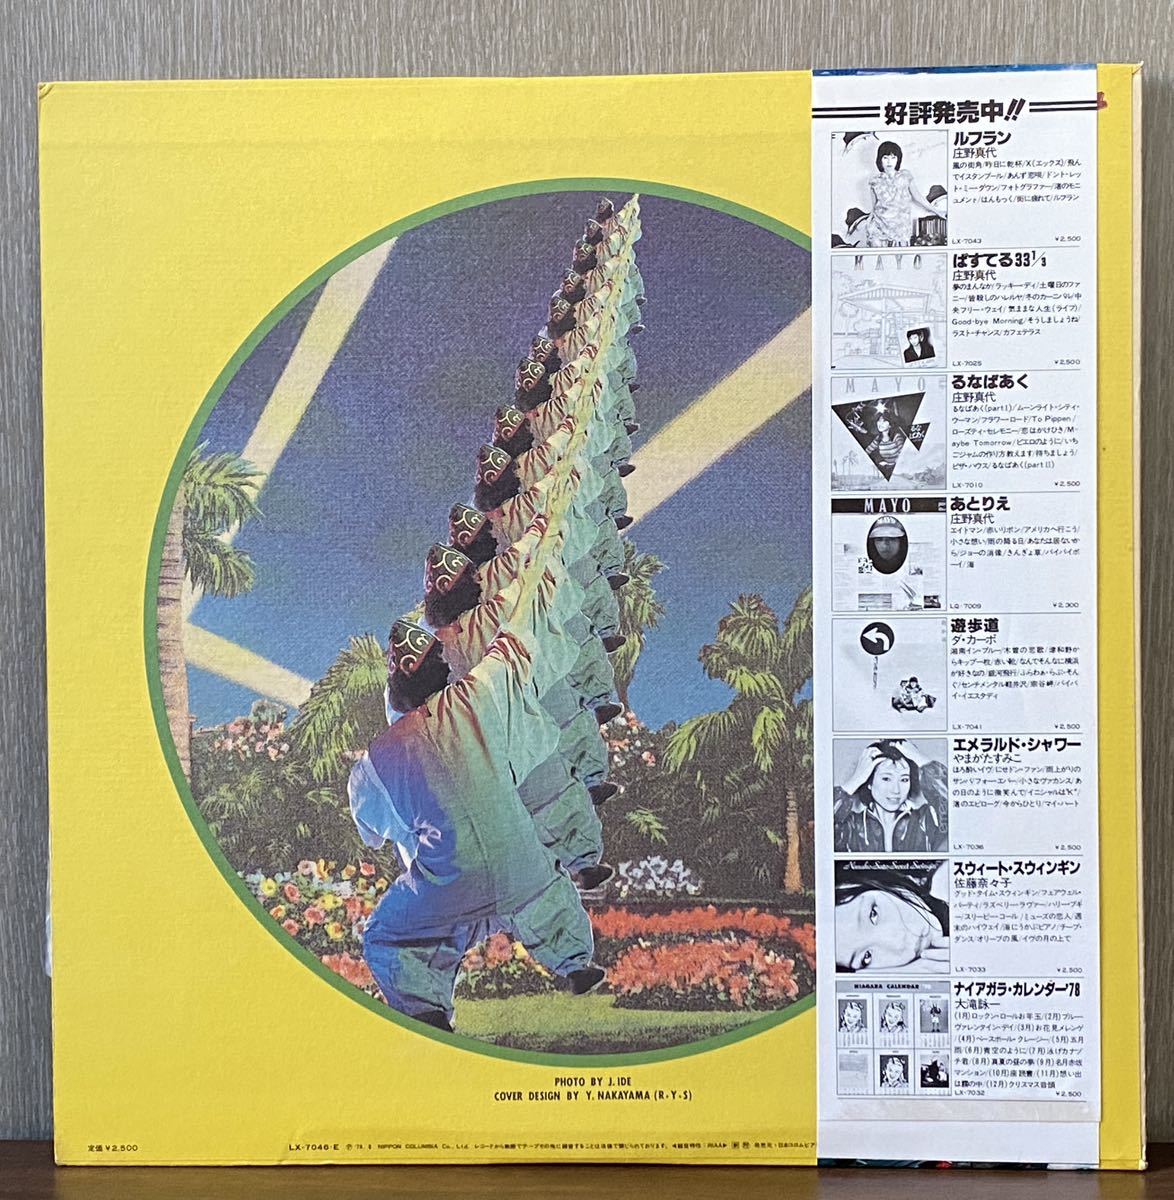 帯付 大滝詠一 大滝詠一デビュー LP レコード 盤 12インチ Niagara Records LX-7046-E シティポップ_画像2